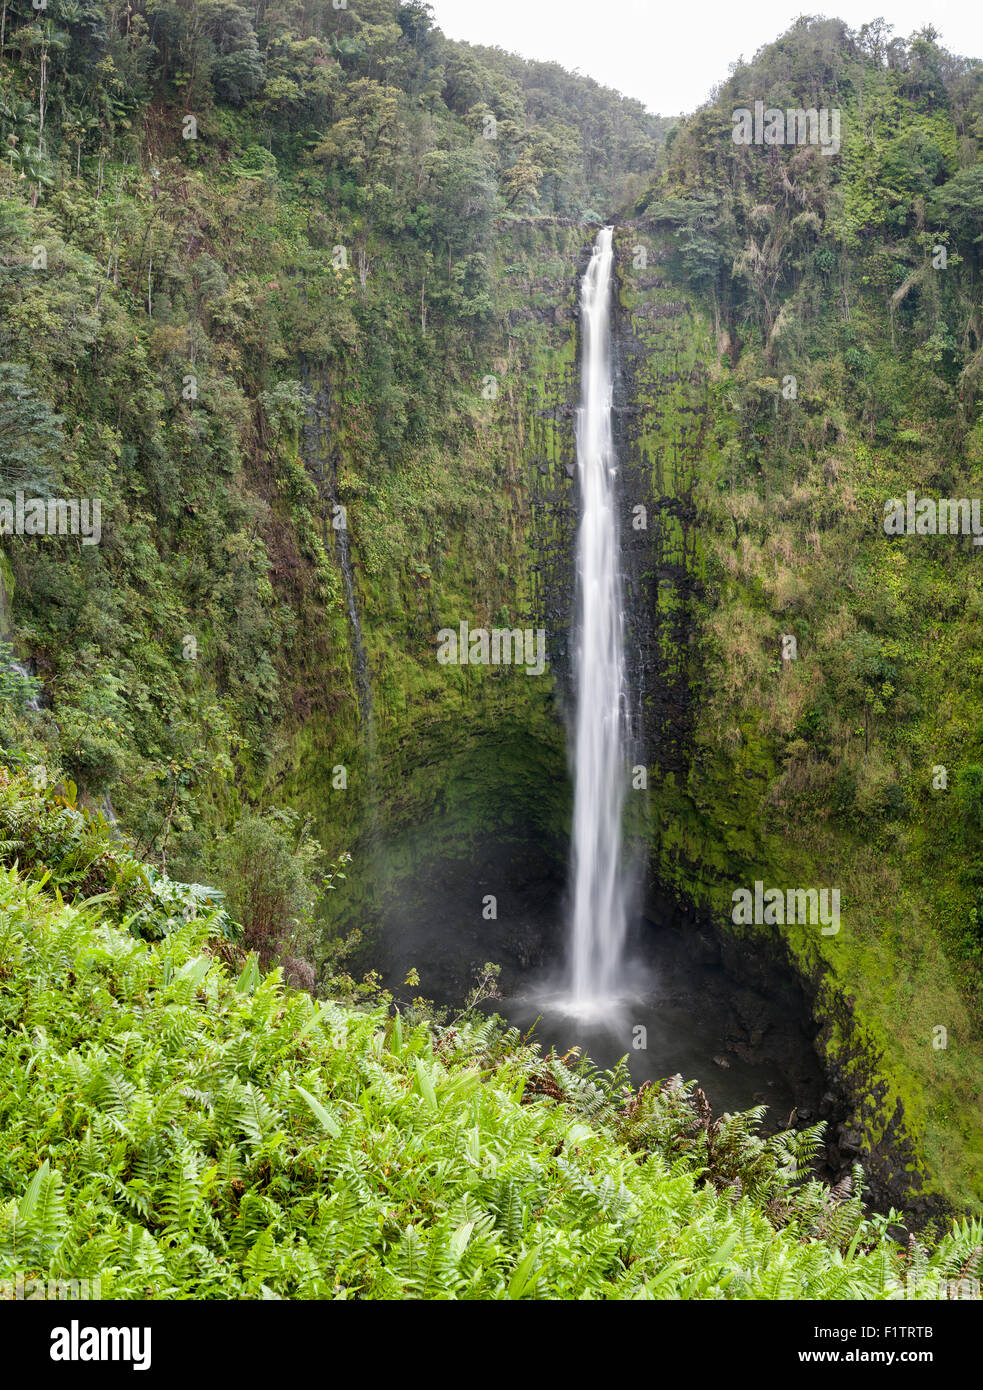 Akaka Falls . Une image haute résolution du grand falls entouré de jungle. Banque D'Images